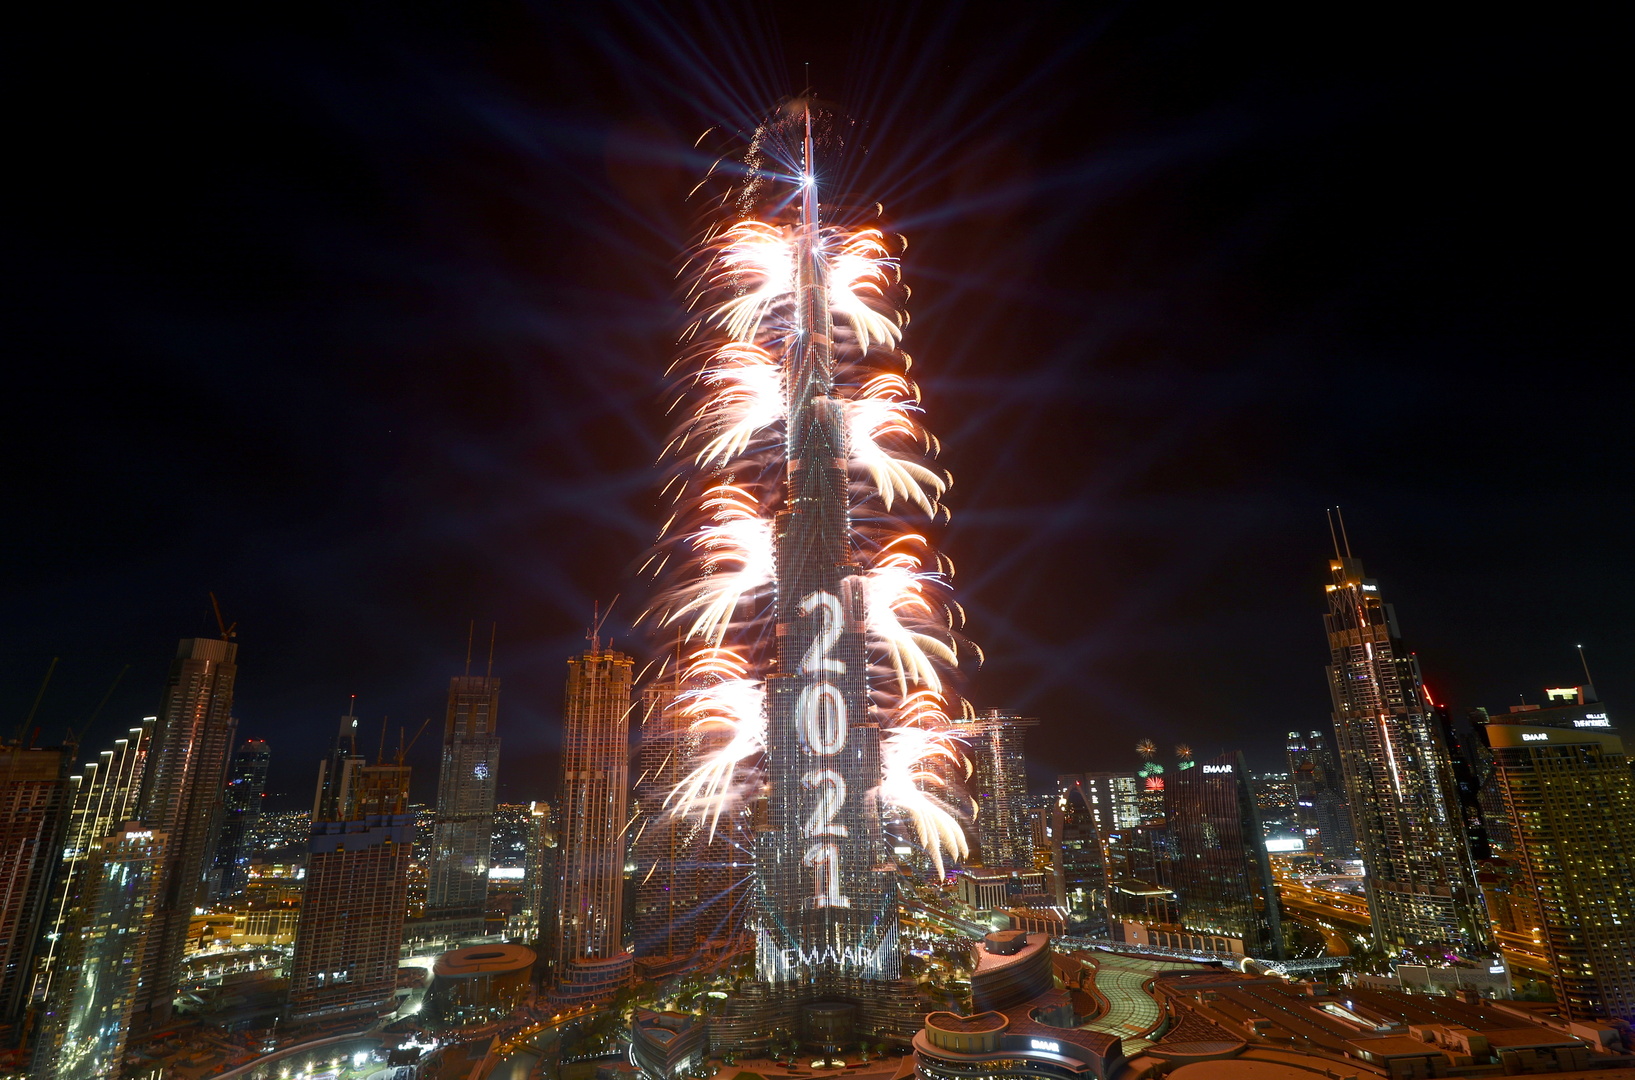 الإمارات تحطم رقمين قياسيين عالميين بعروض ضخمة للألعاب النارية (فيديو+صور)